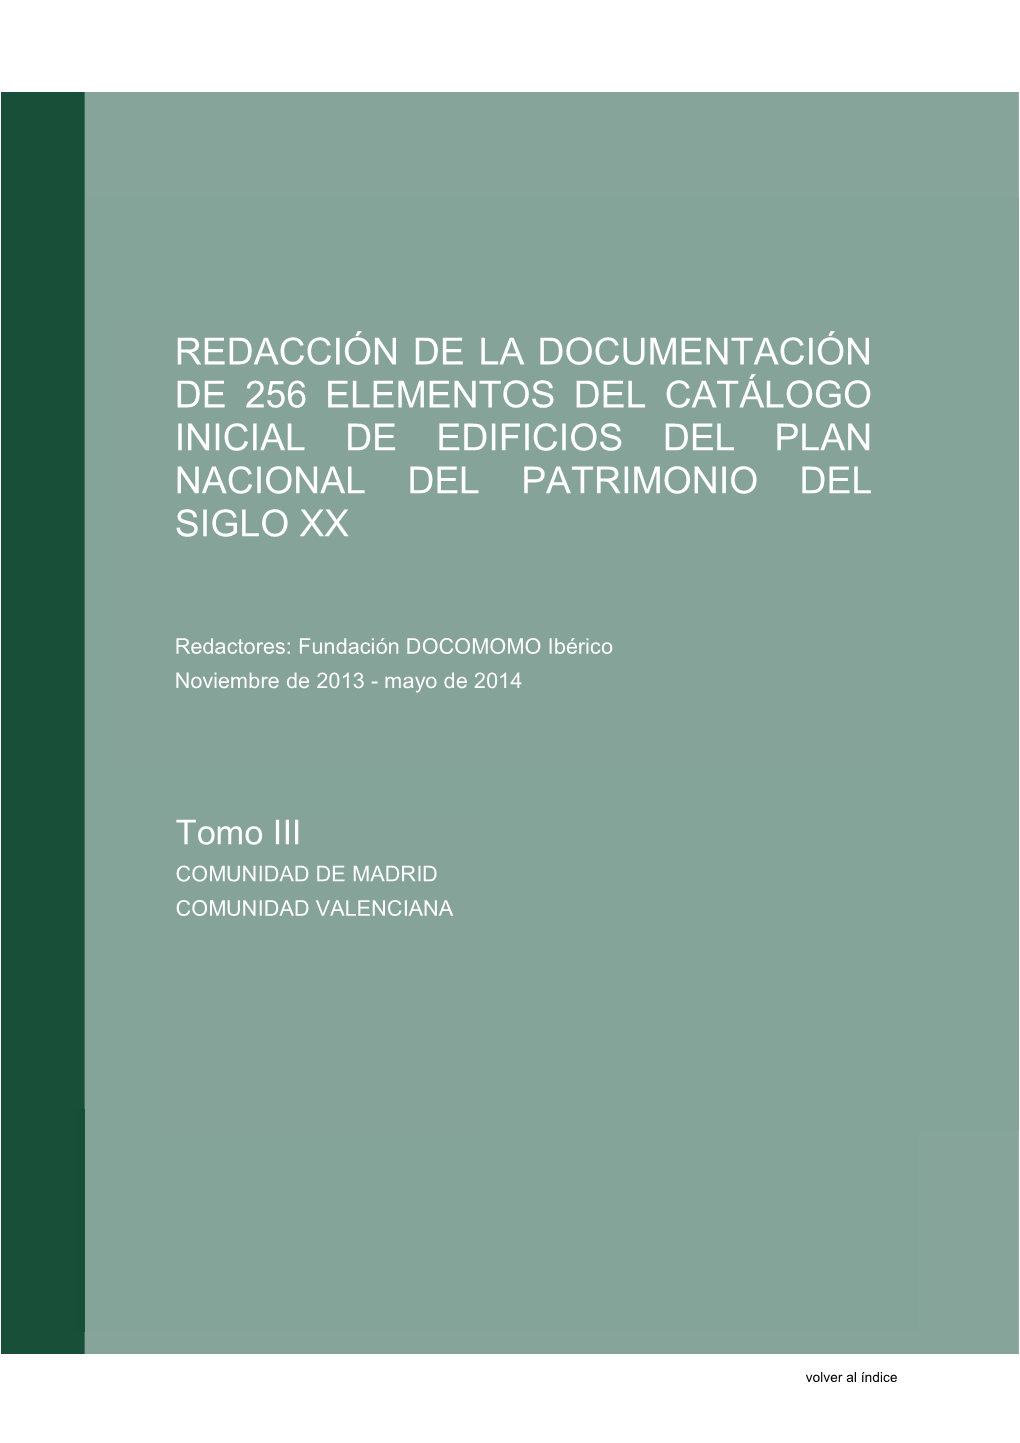 Redacción De La Documentación De 256 Elementos Del Catálogo Inicial De Edificios Del Plan Nacional Del Patrimonio Del Siglo Xx